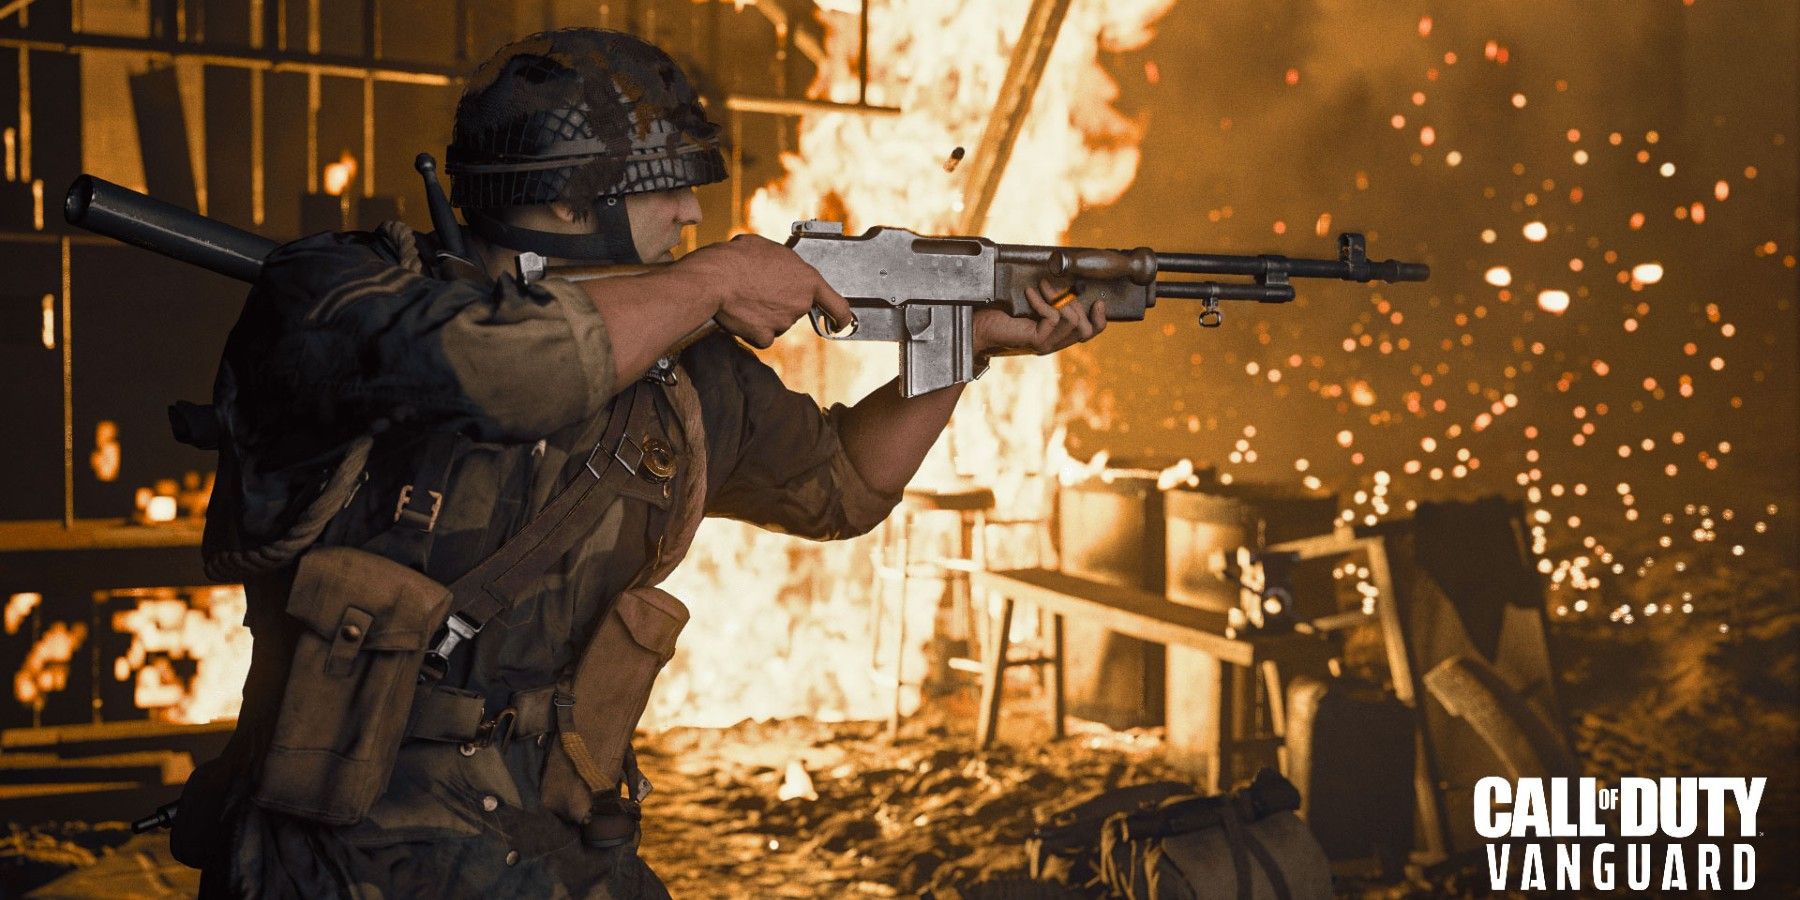 Call of Duty Vanguard Player Dies After Running Into Door